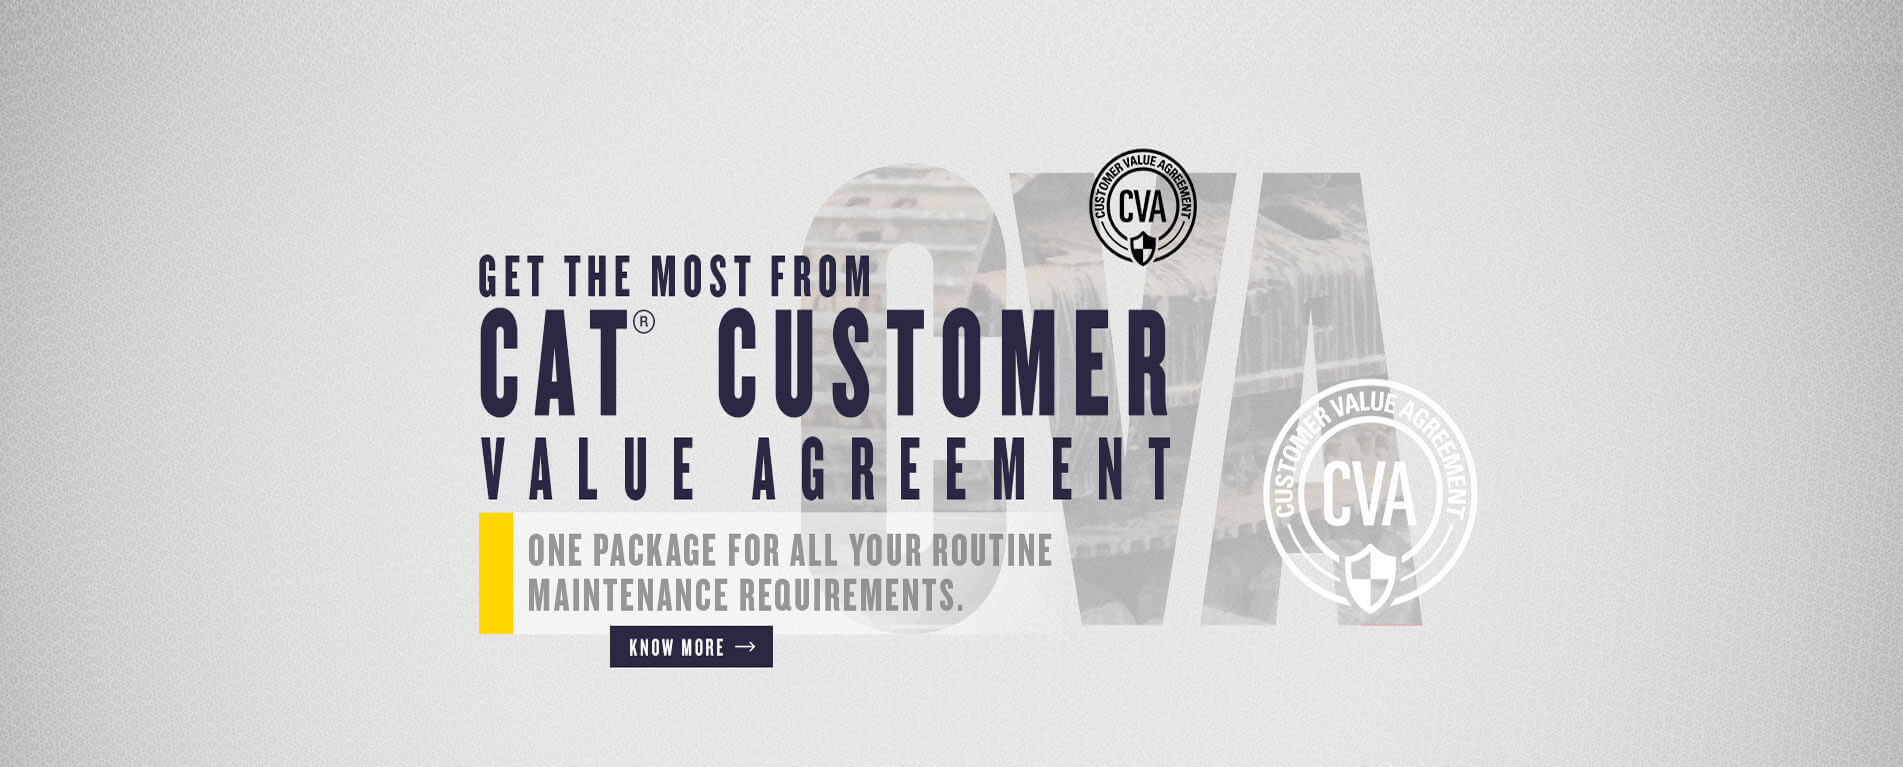 Cat-Customer-Value-Agreement-Banner